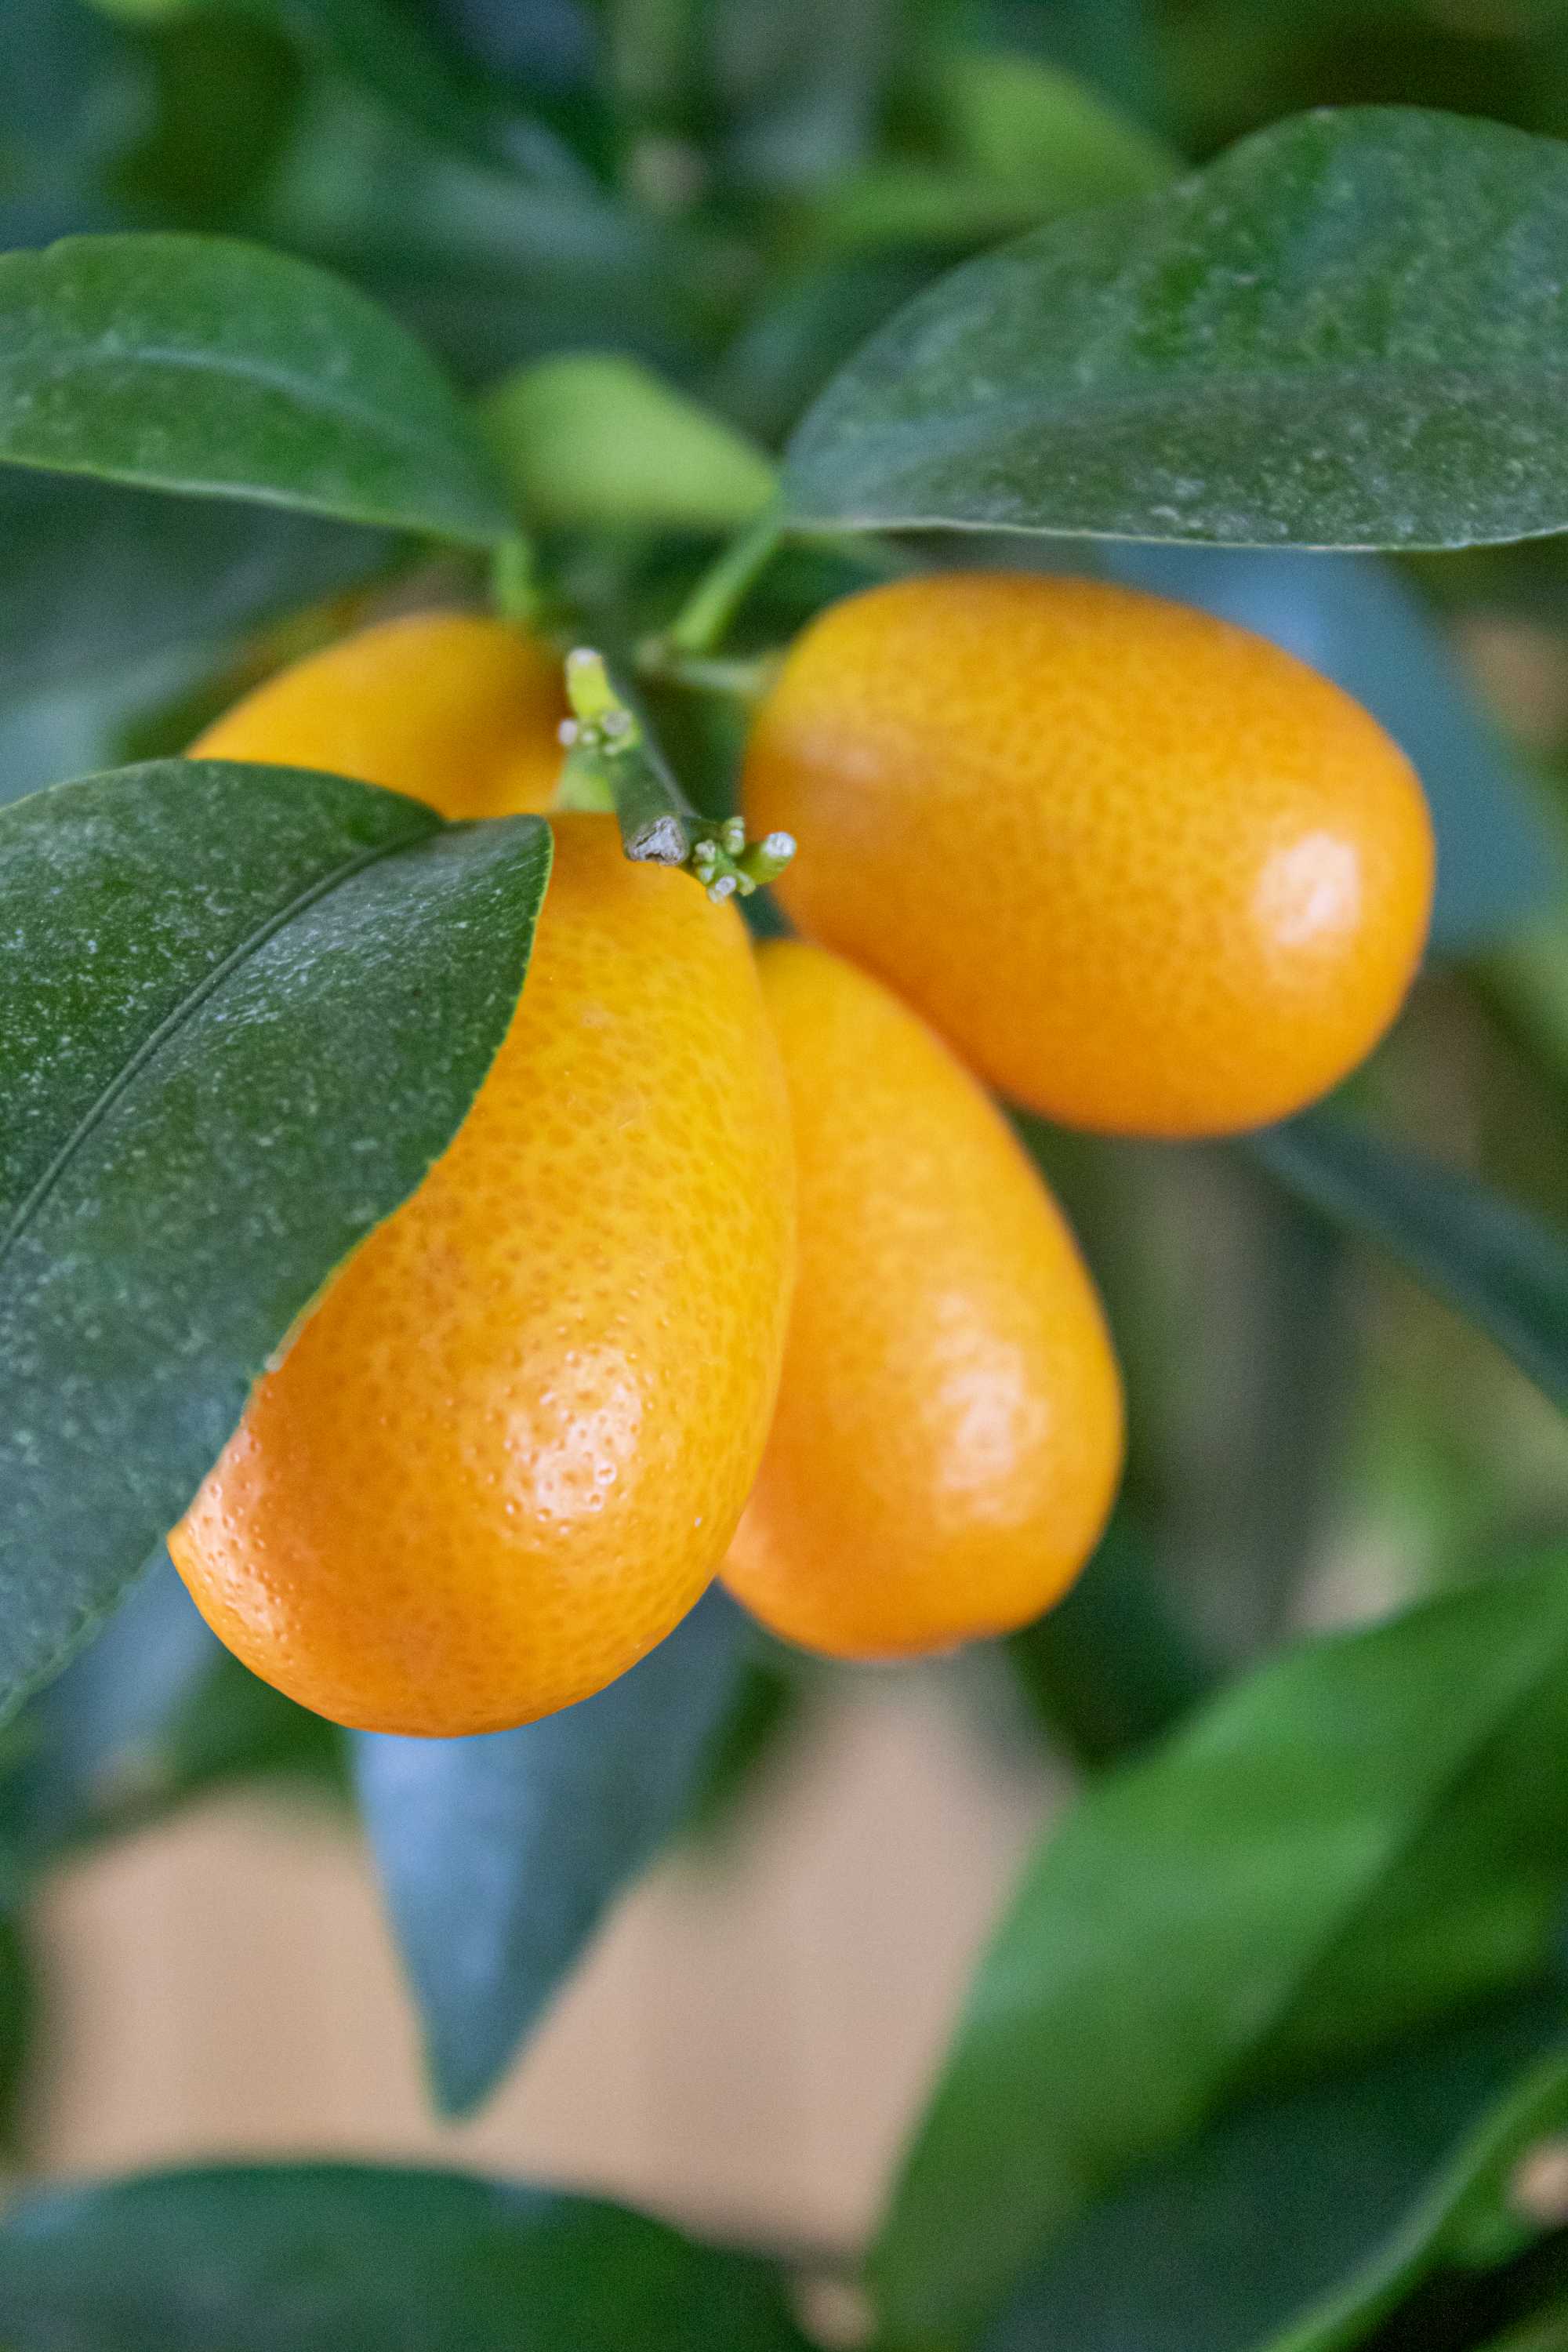 Kumquat 'Mezzo' - Citrus japonica - Fortunella margarita